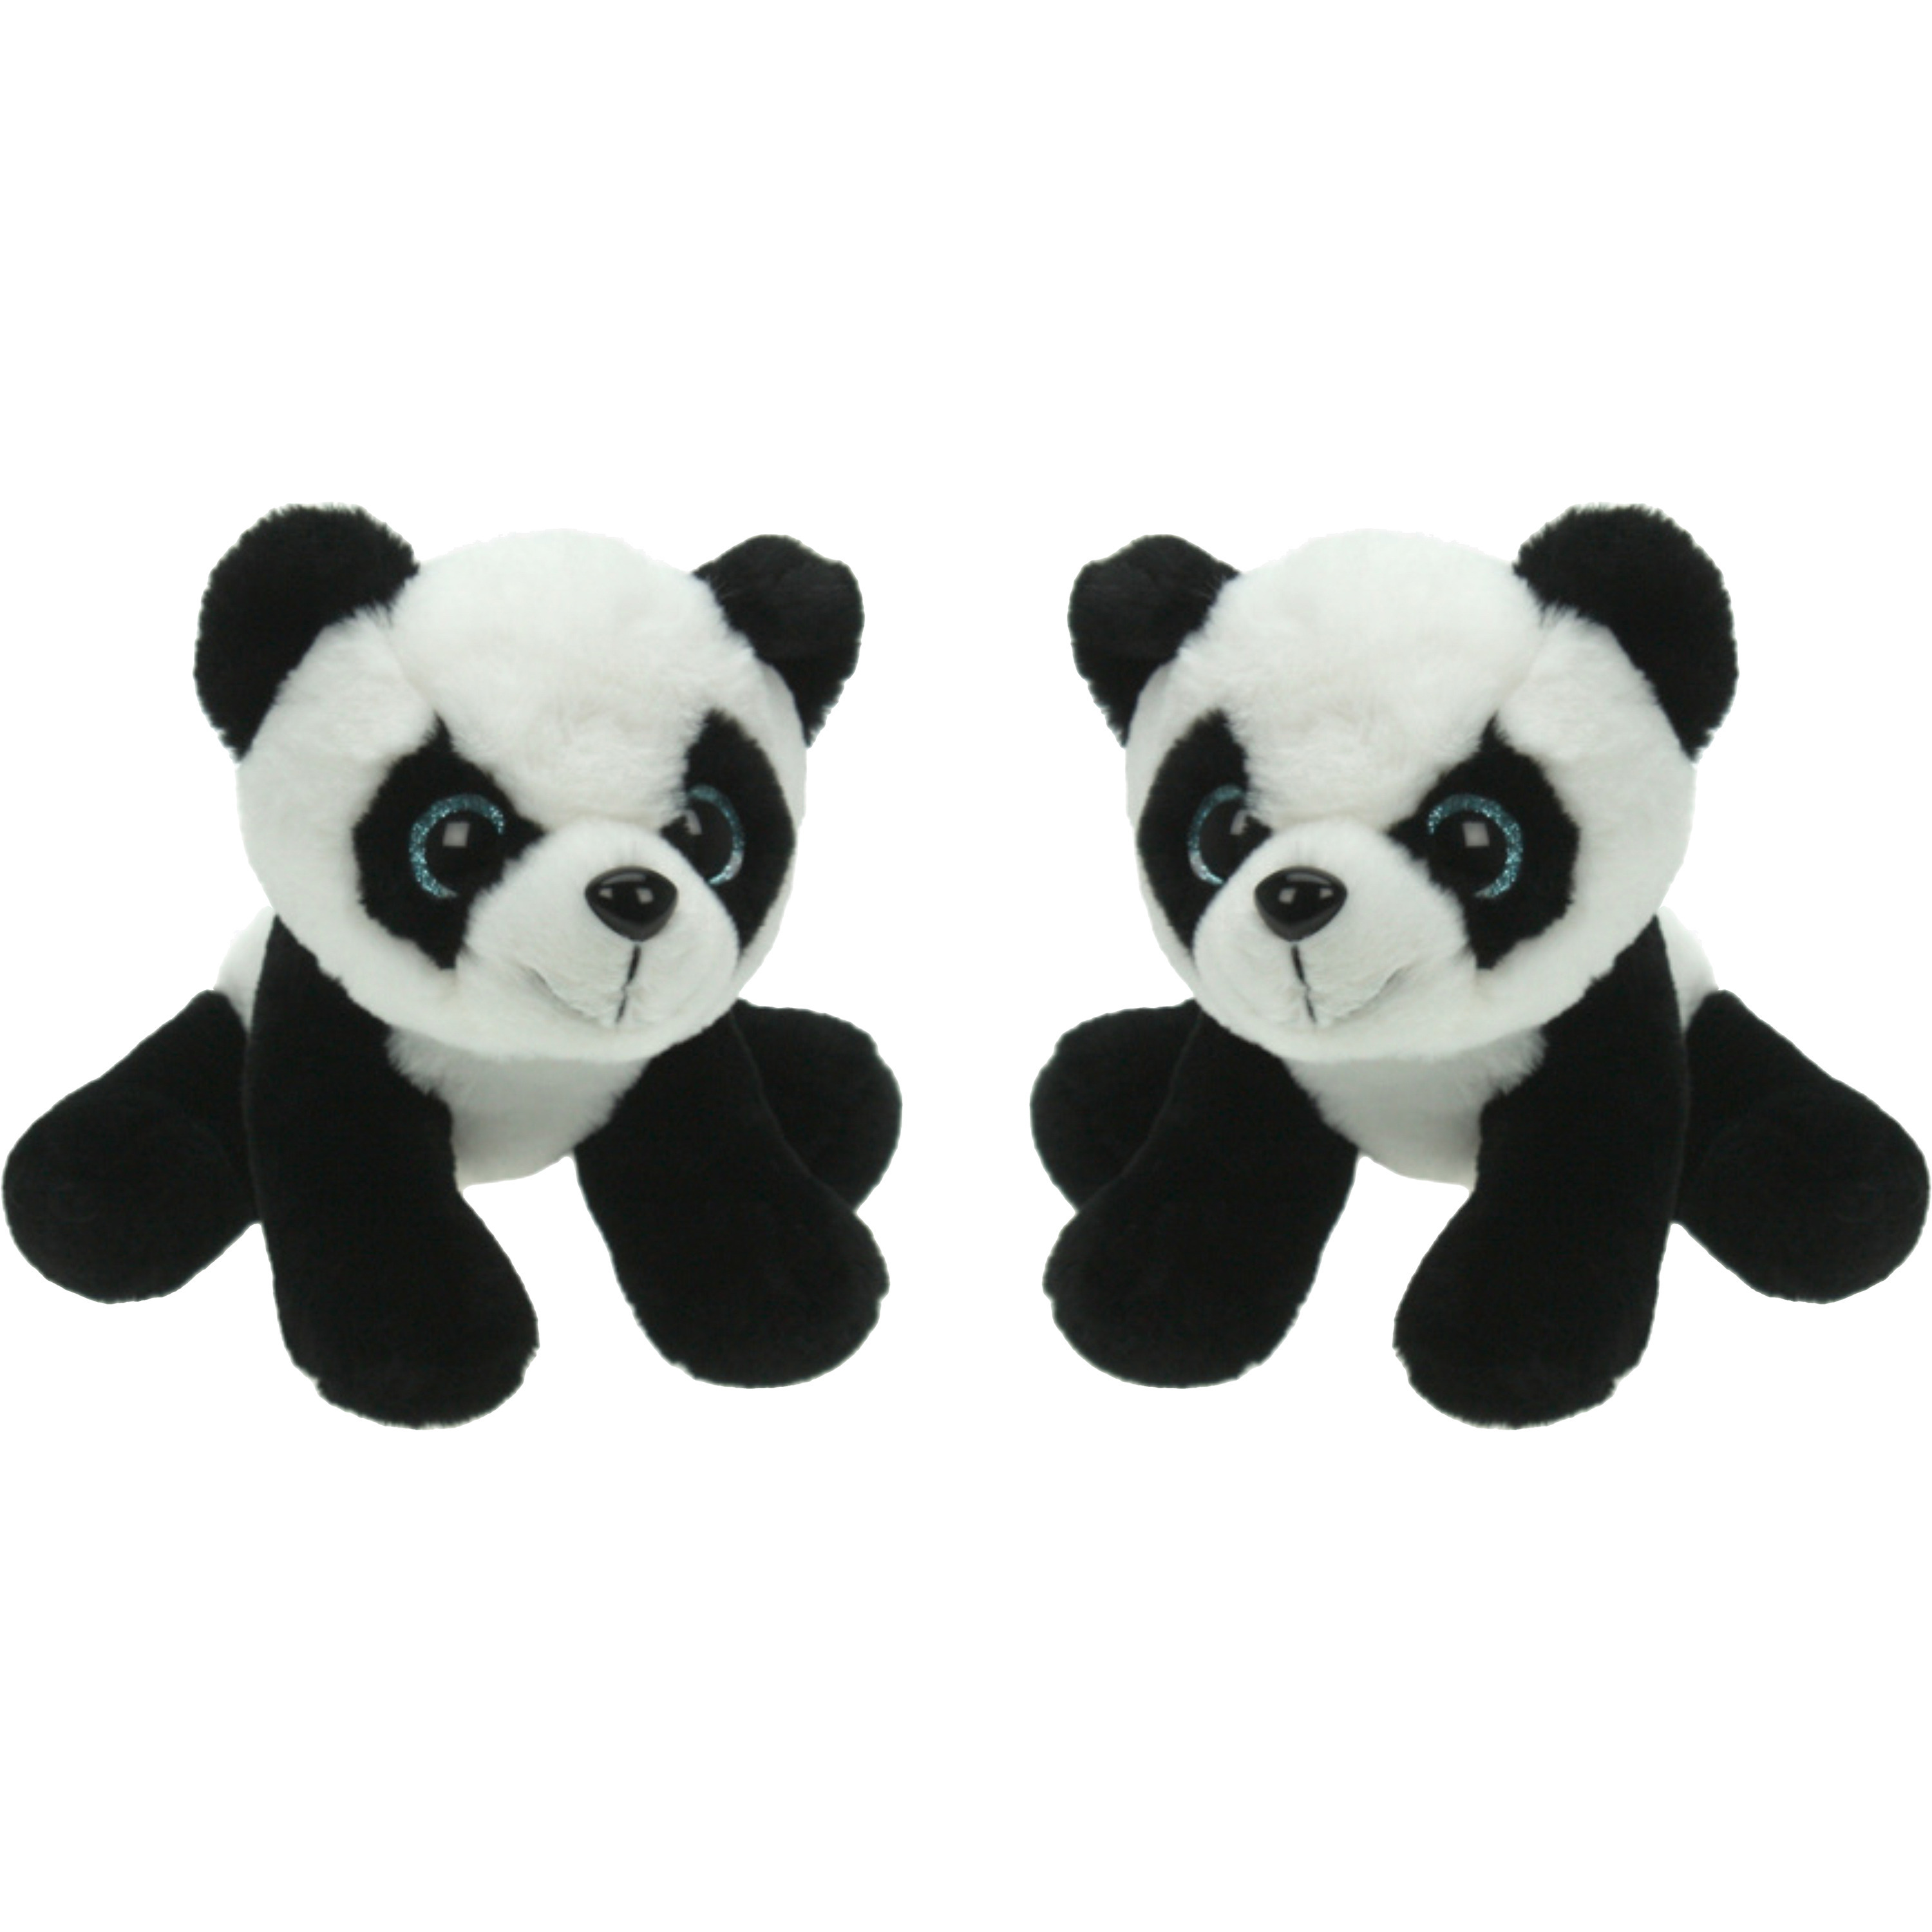 Set van 2x stuks pluche knuffel dieren Panda beer van 25 cm